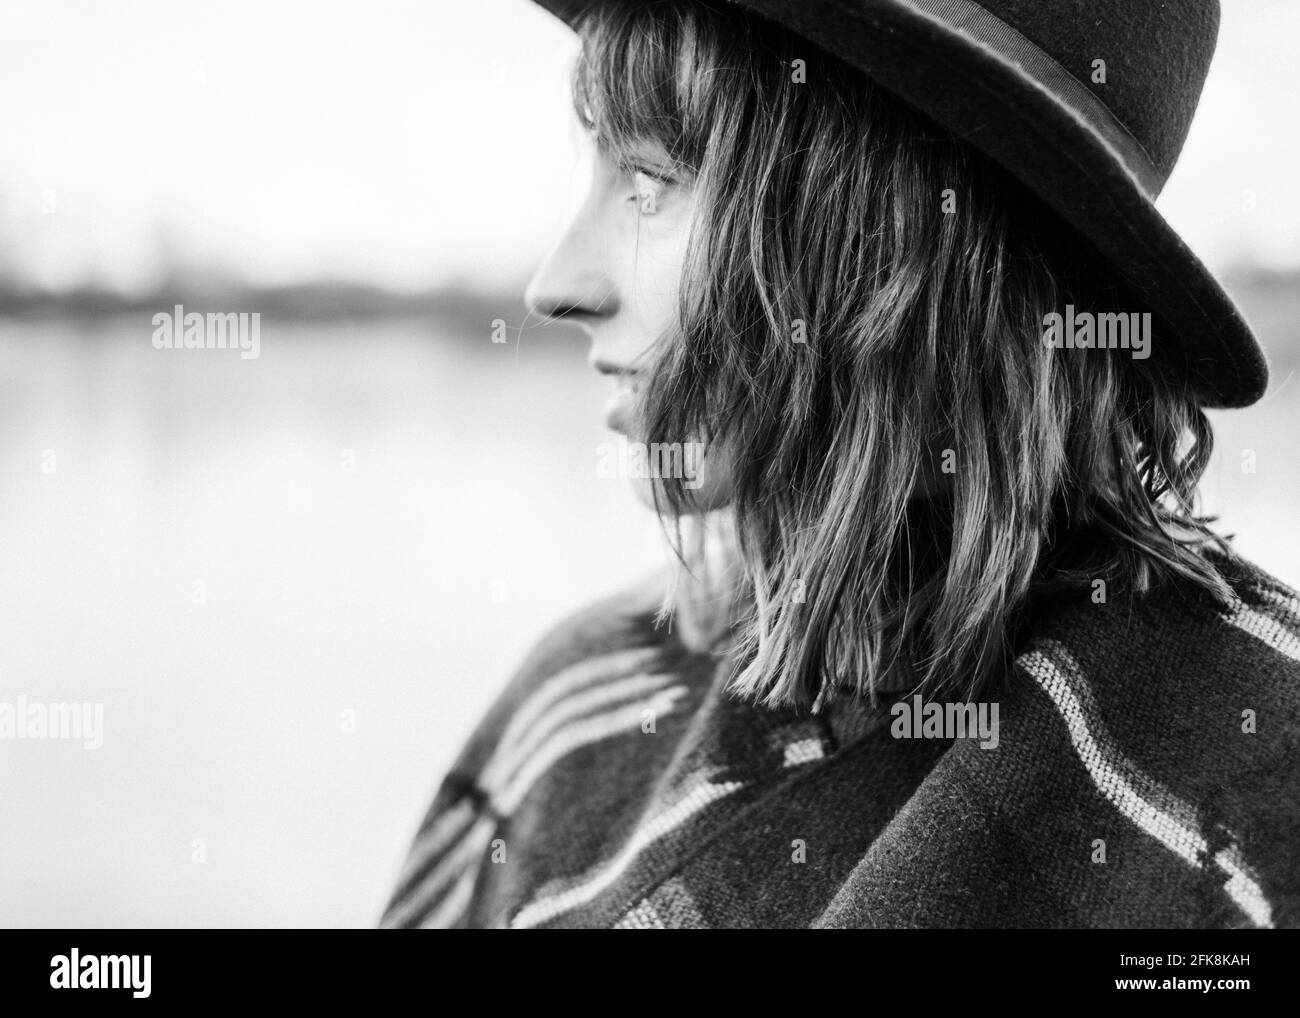 Schwarz-weiß Porträt einer jungen Frau, die ihre Freiheit genießt. Allein reisen oder die Natur in der Nähe genießen. Stockfoto